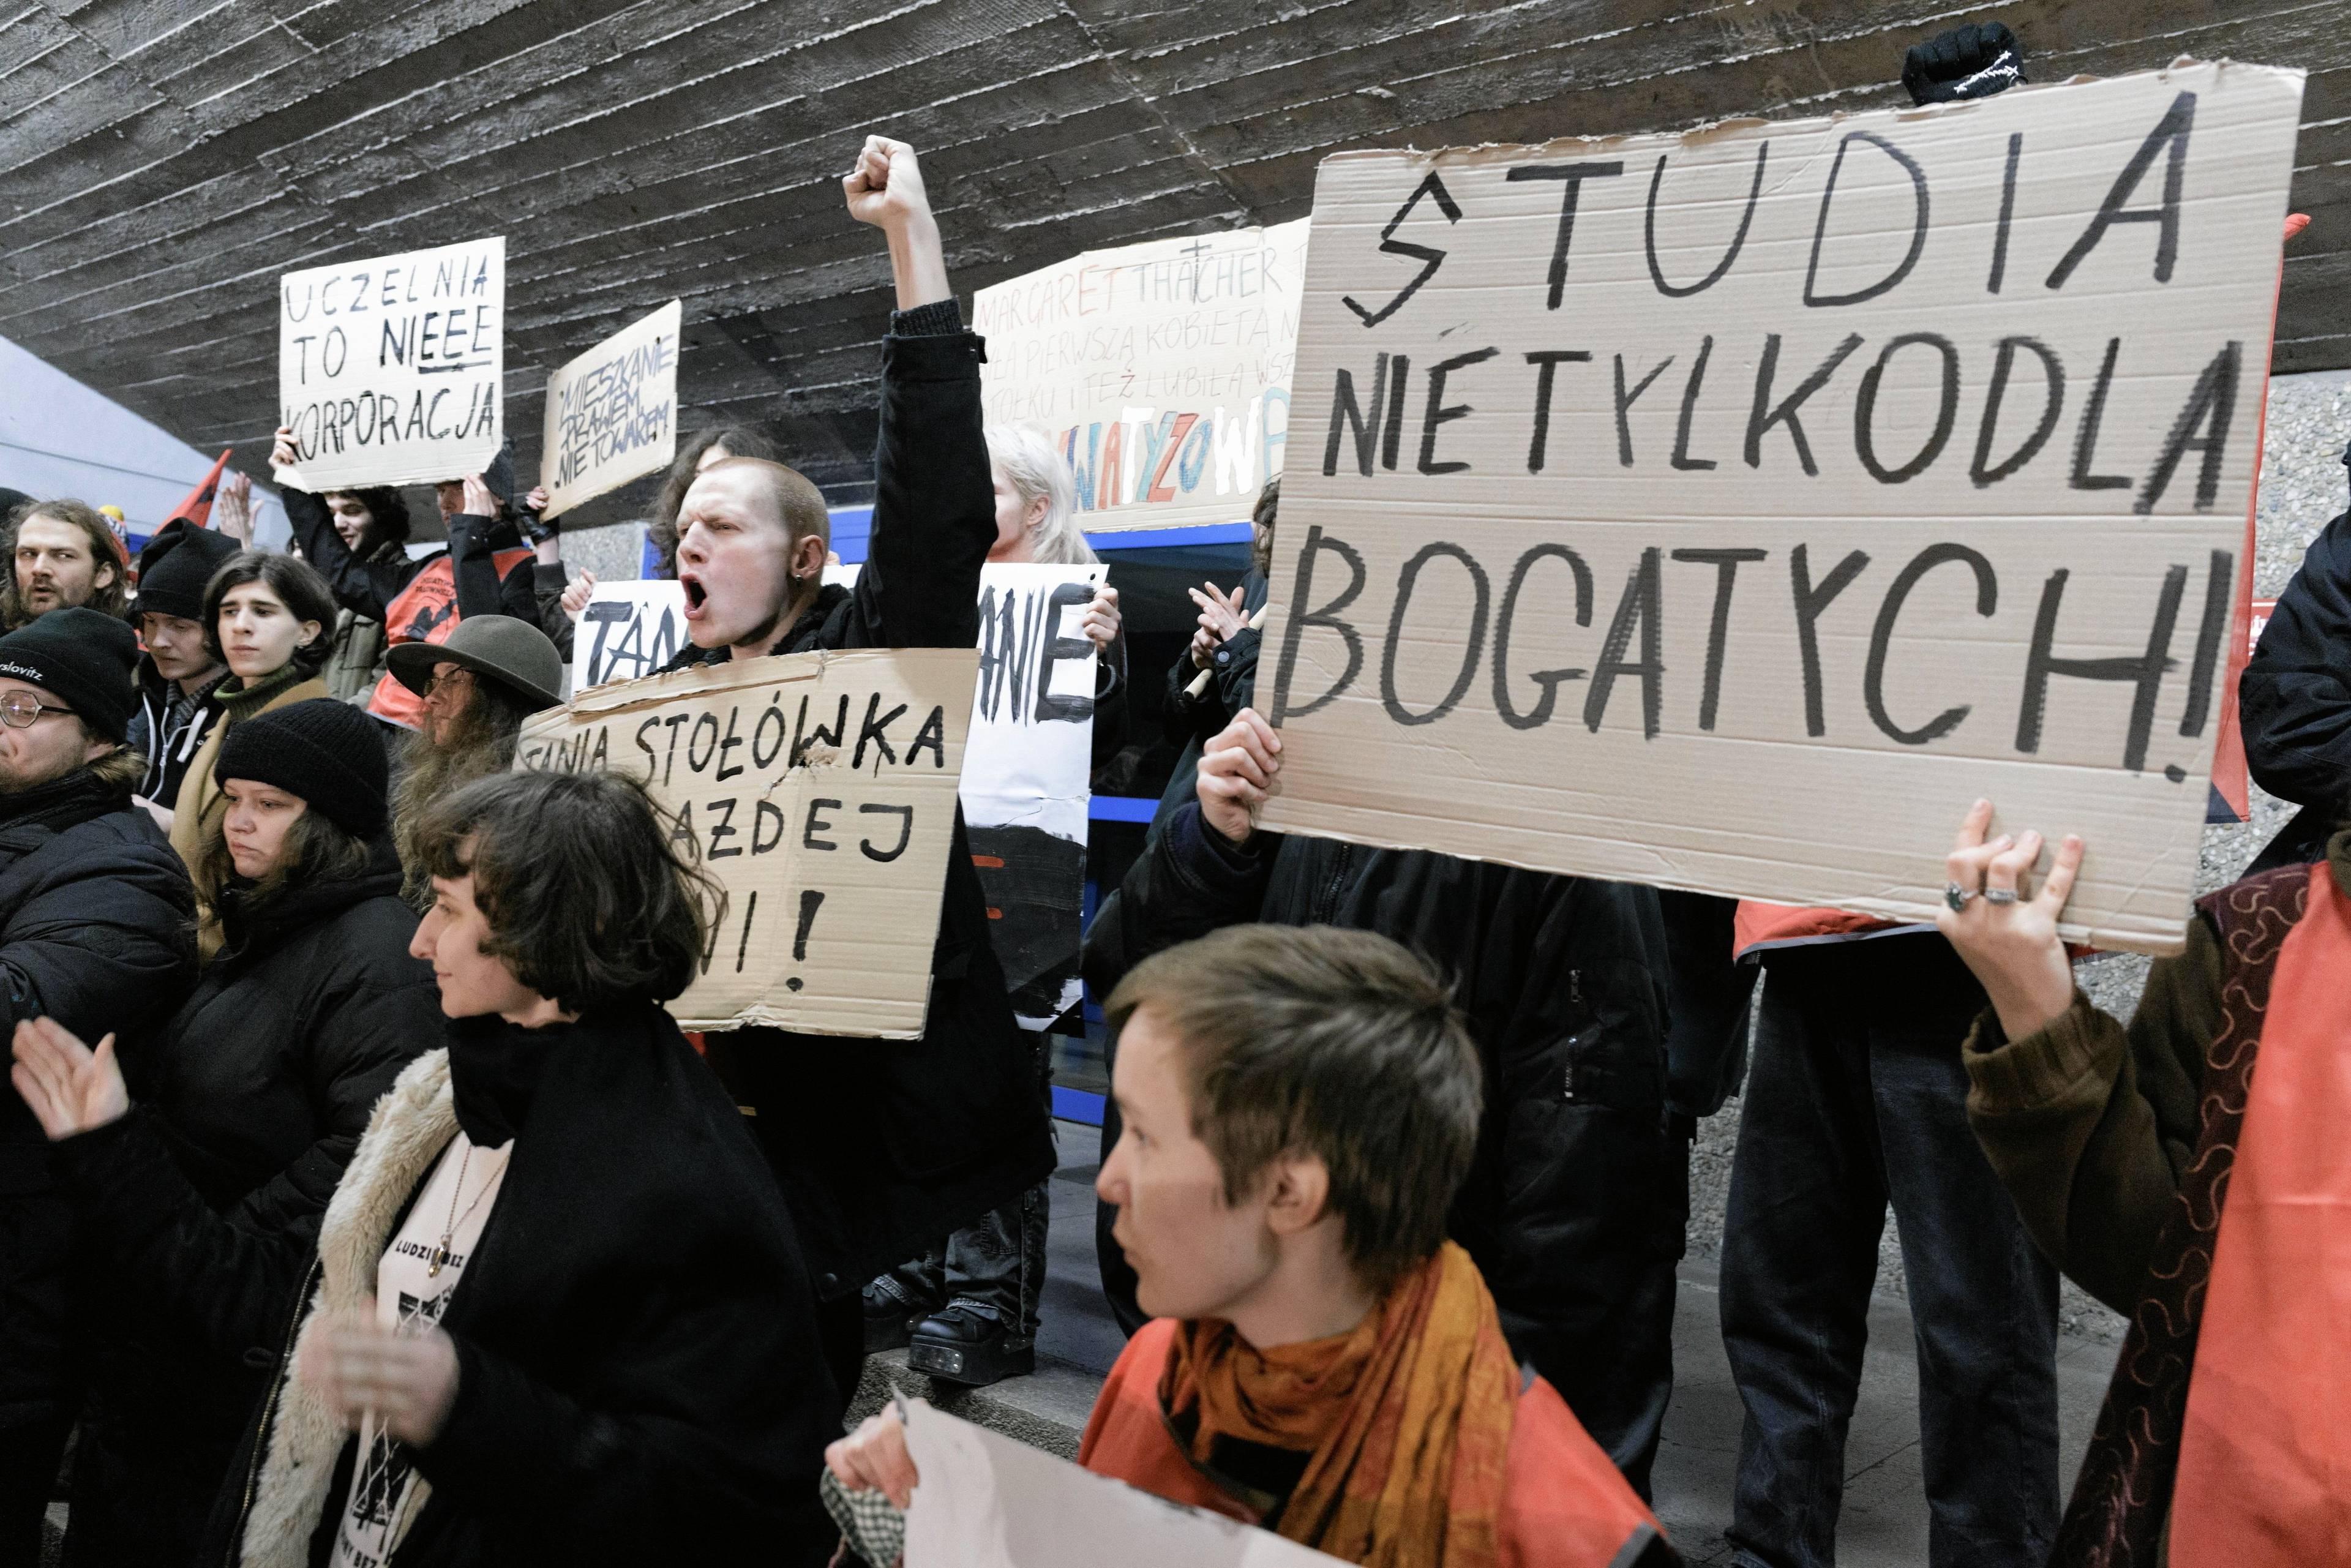 studenci protestujący w Poznaniu. transparent "Studia nie tylko dla bogatych"